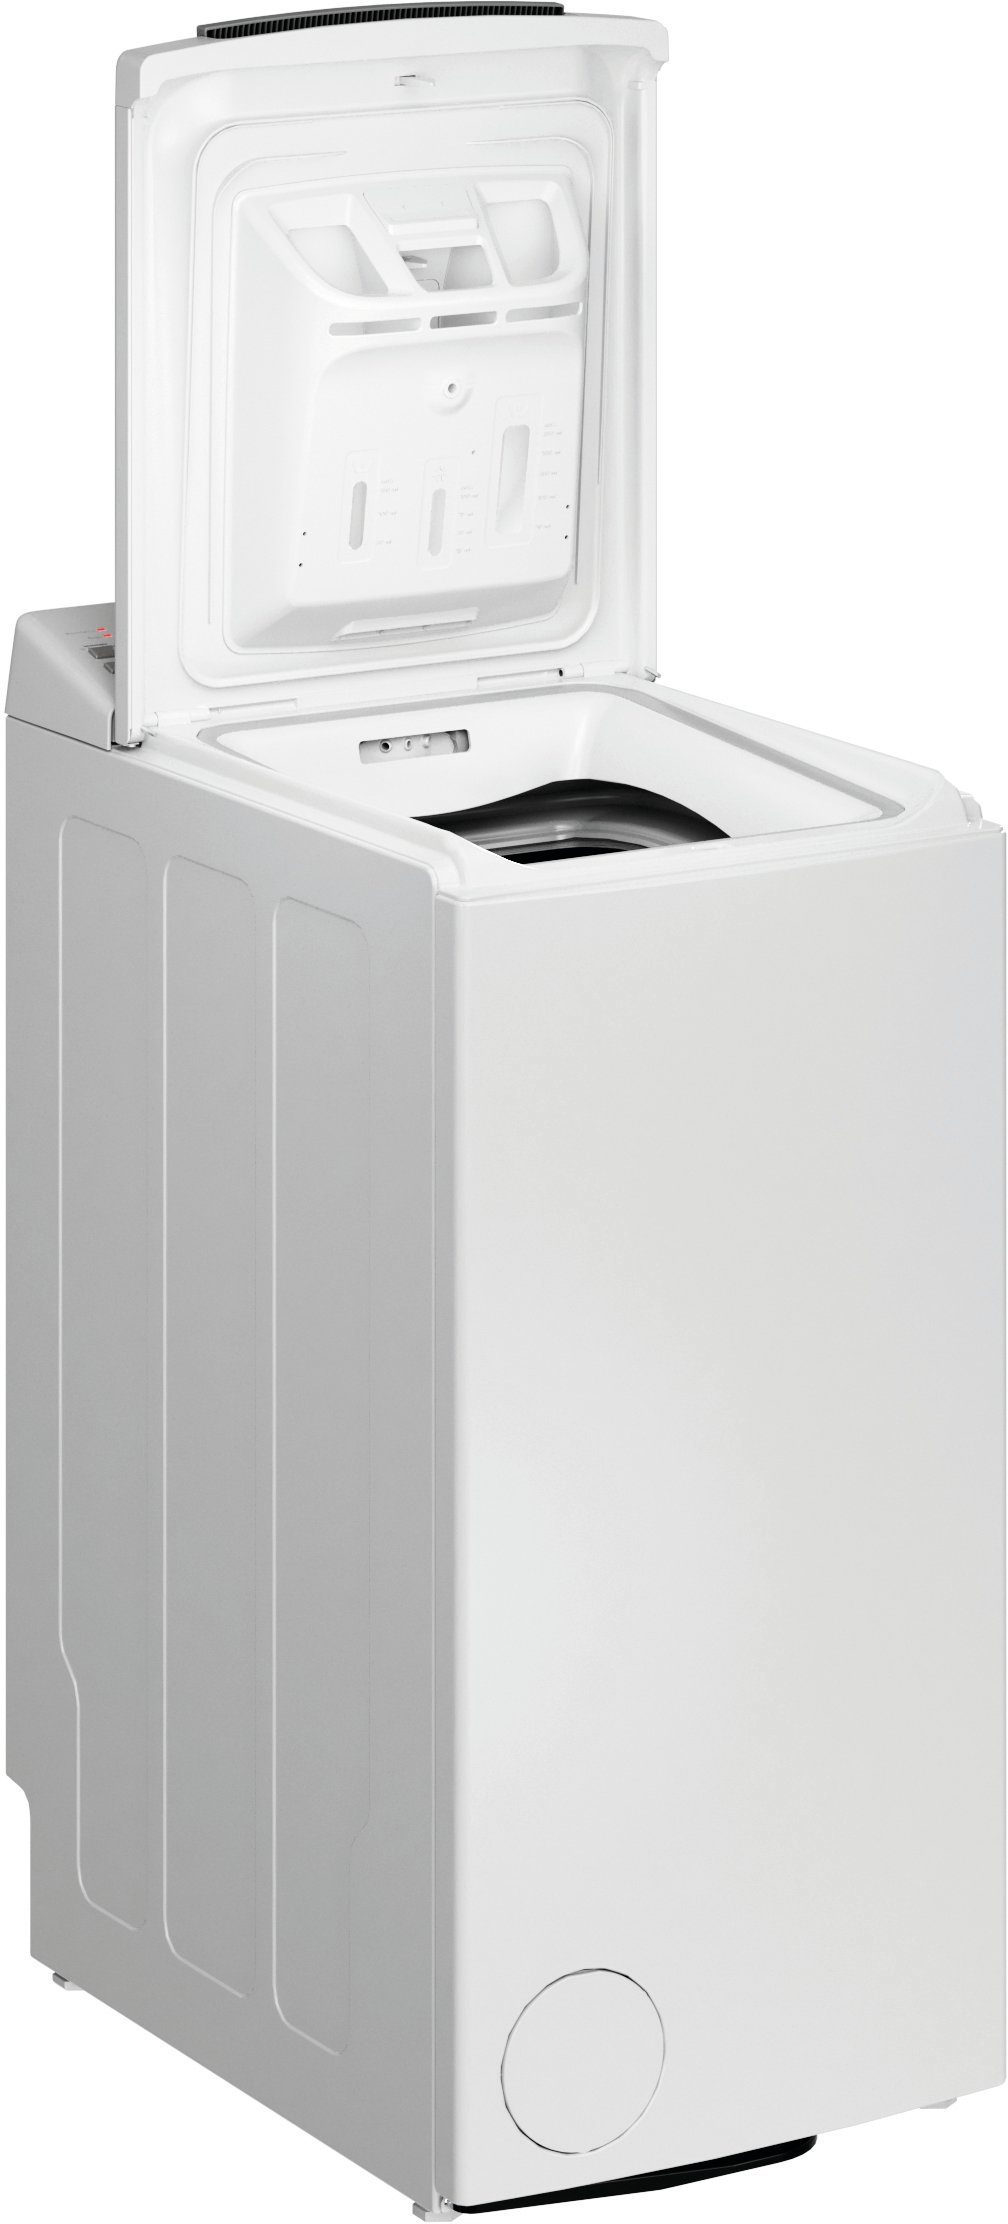 BAUKNECHT Waschmaschine Toplader WAT 6 kg, C, 1200 U/min 6313